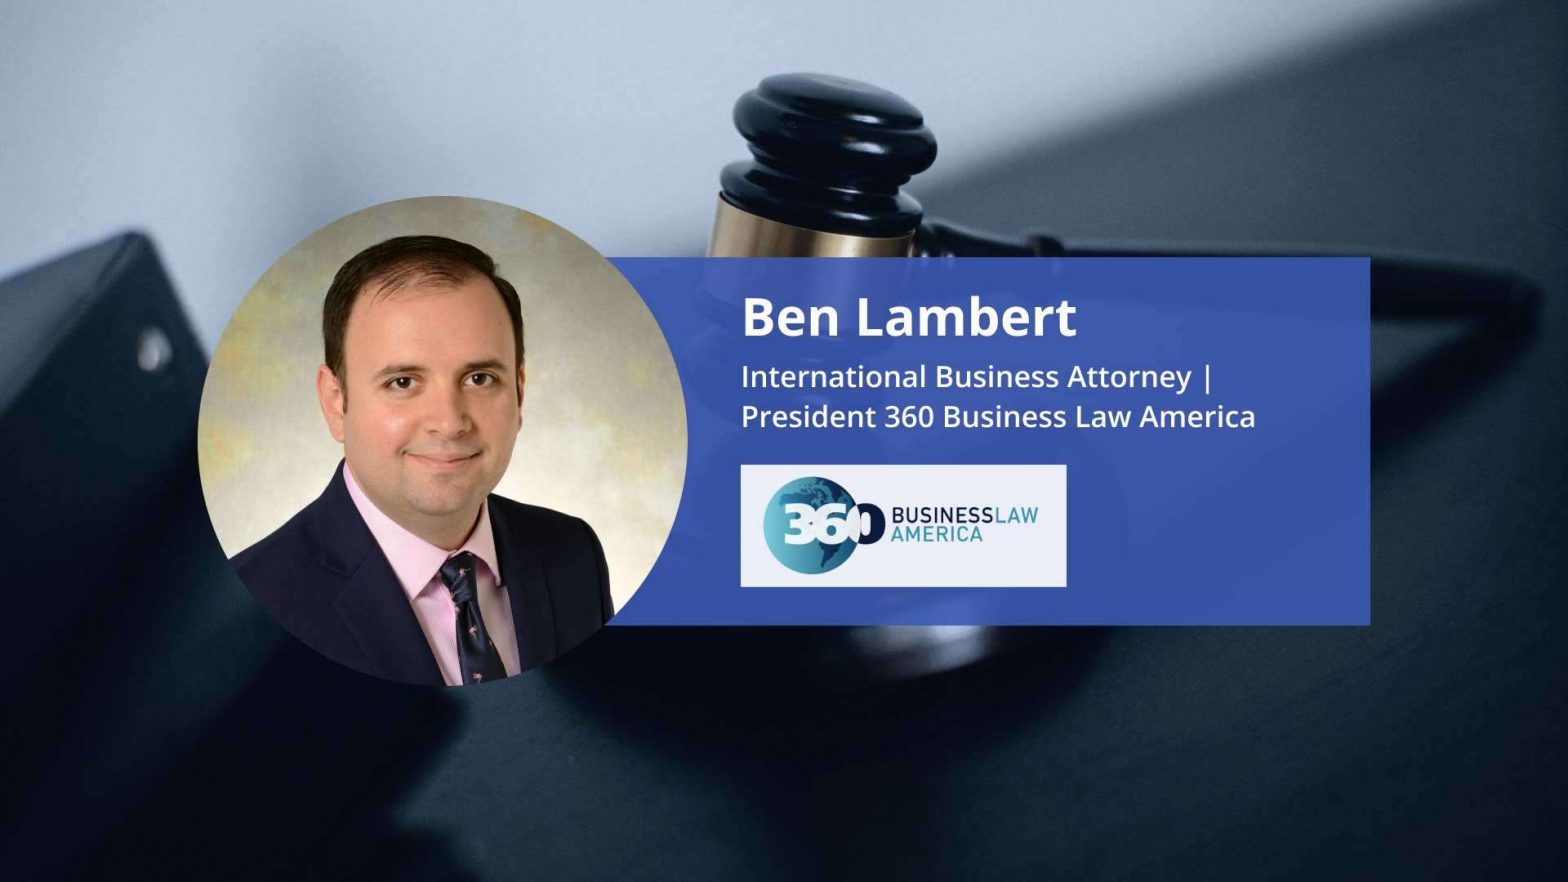 Blue Ocean Global Technology interviews Ben Lambert